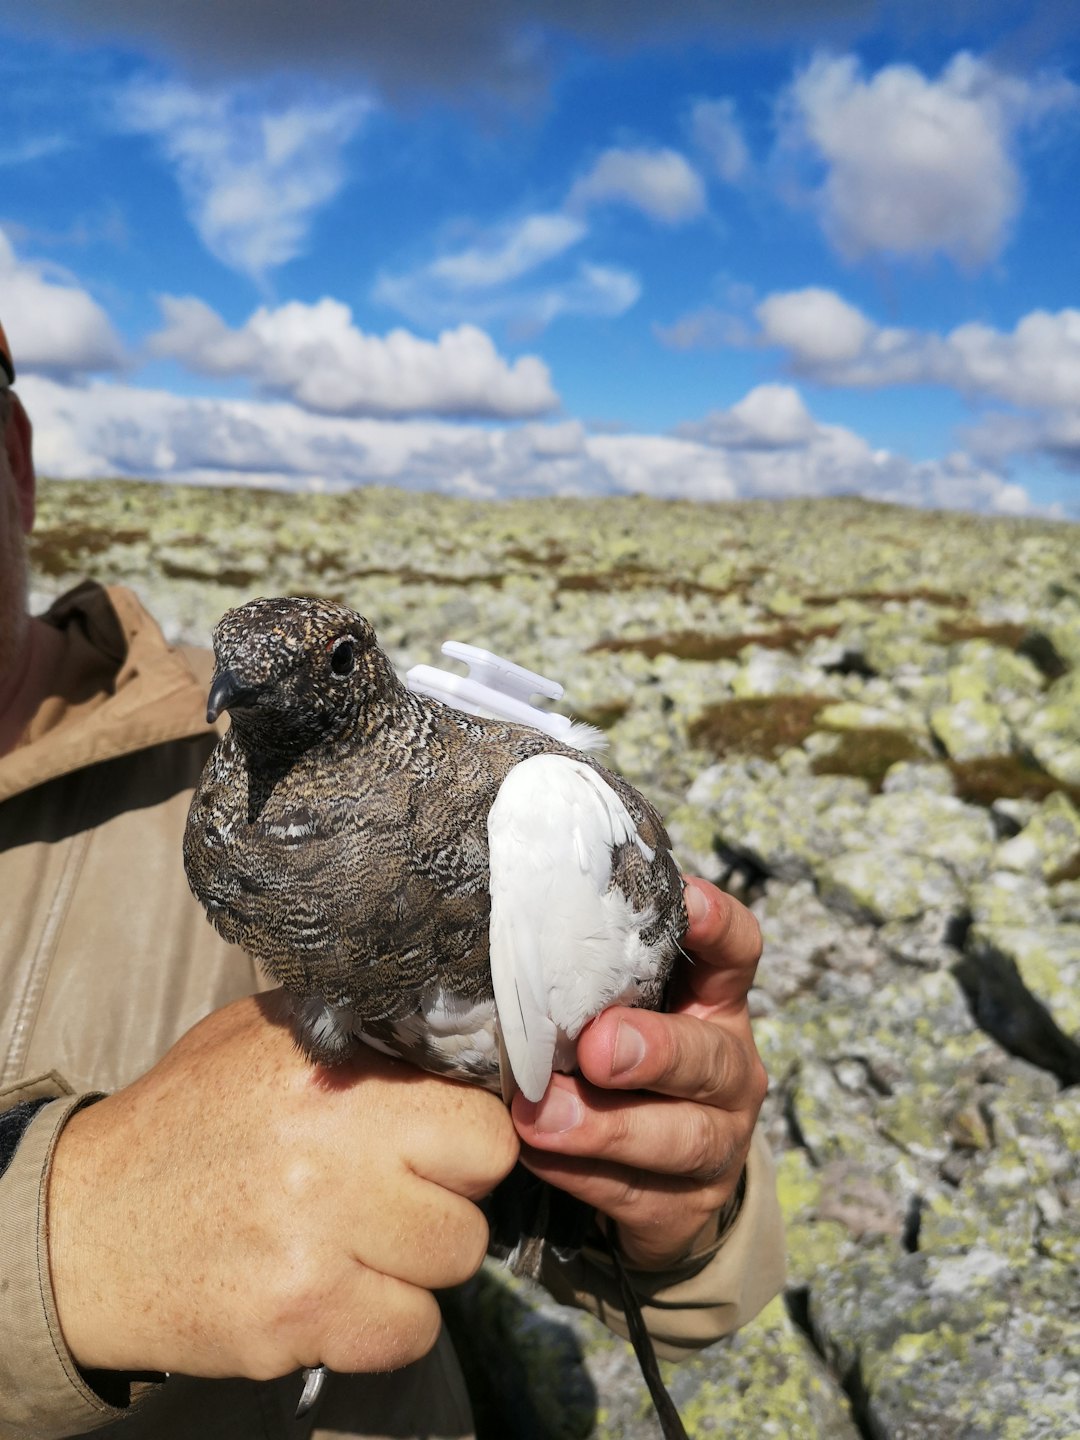 VIKTIG: Senderne blir skånsomt plassert på fuglen, som gir forskerne et viktig innblikk i hvordan fjellrypa bruker fjellområdene. (Foto: Isak Karlstrøm)